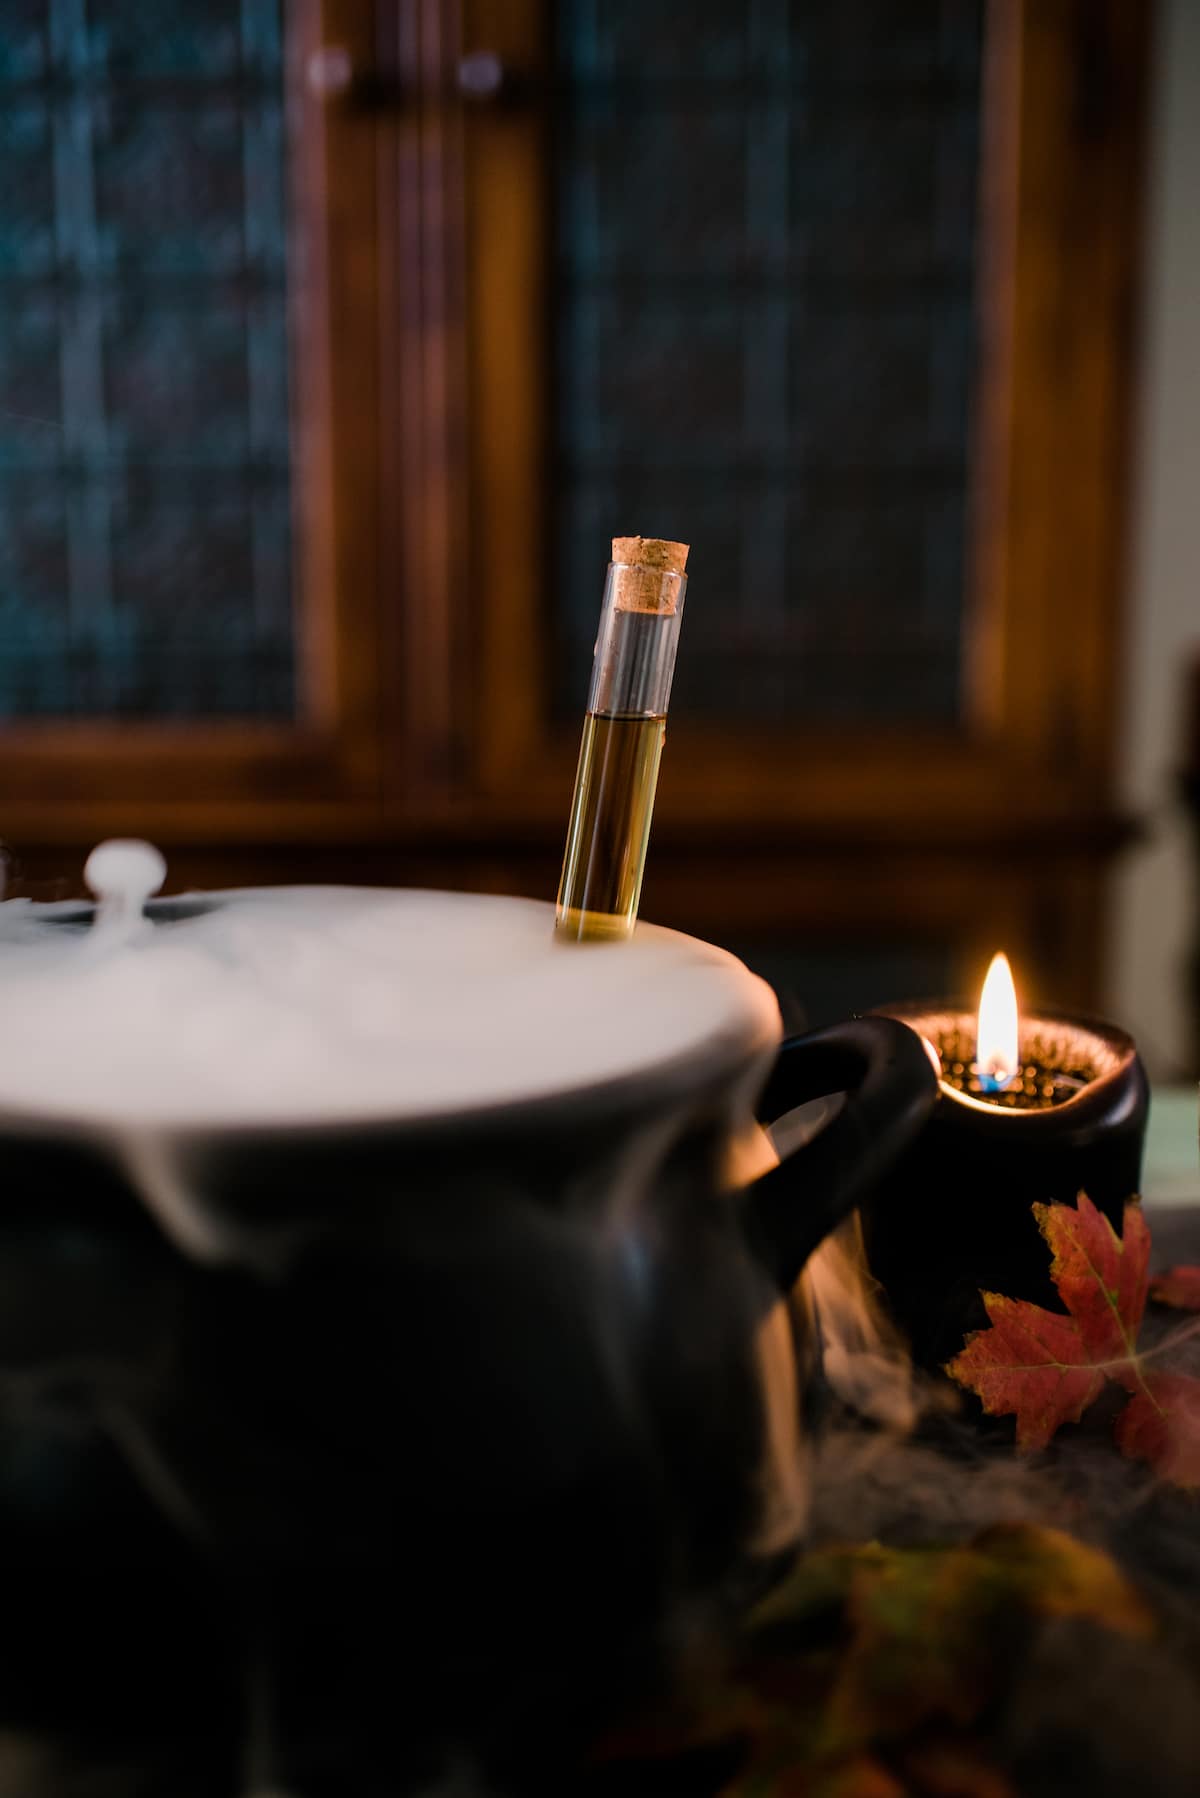 caldero de sangría de halloween de brebaje de bruja empañando con hielo seco junto a una vela negra encendida. 